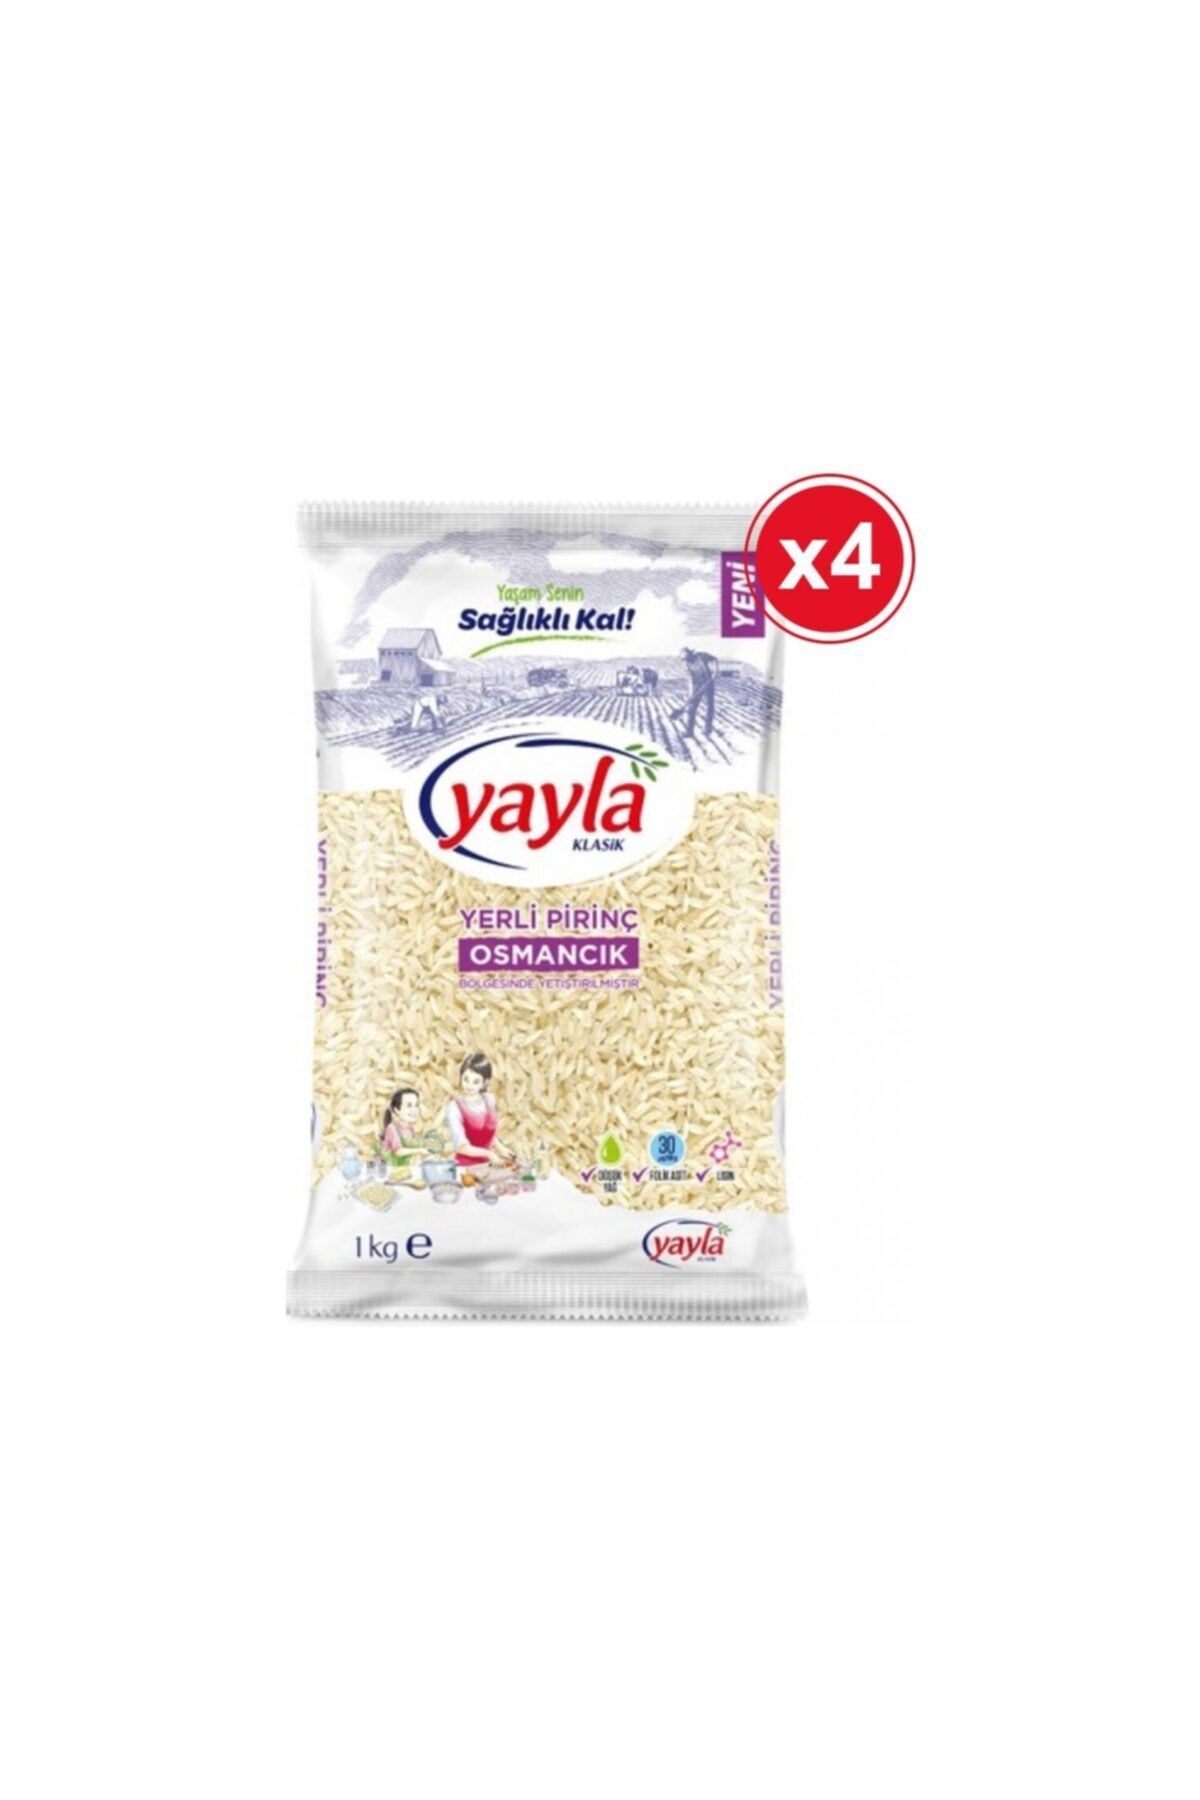 Yayla Bakliyat Yayla Osmancık Pirinç 1 Kg X 4'lü Paket